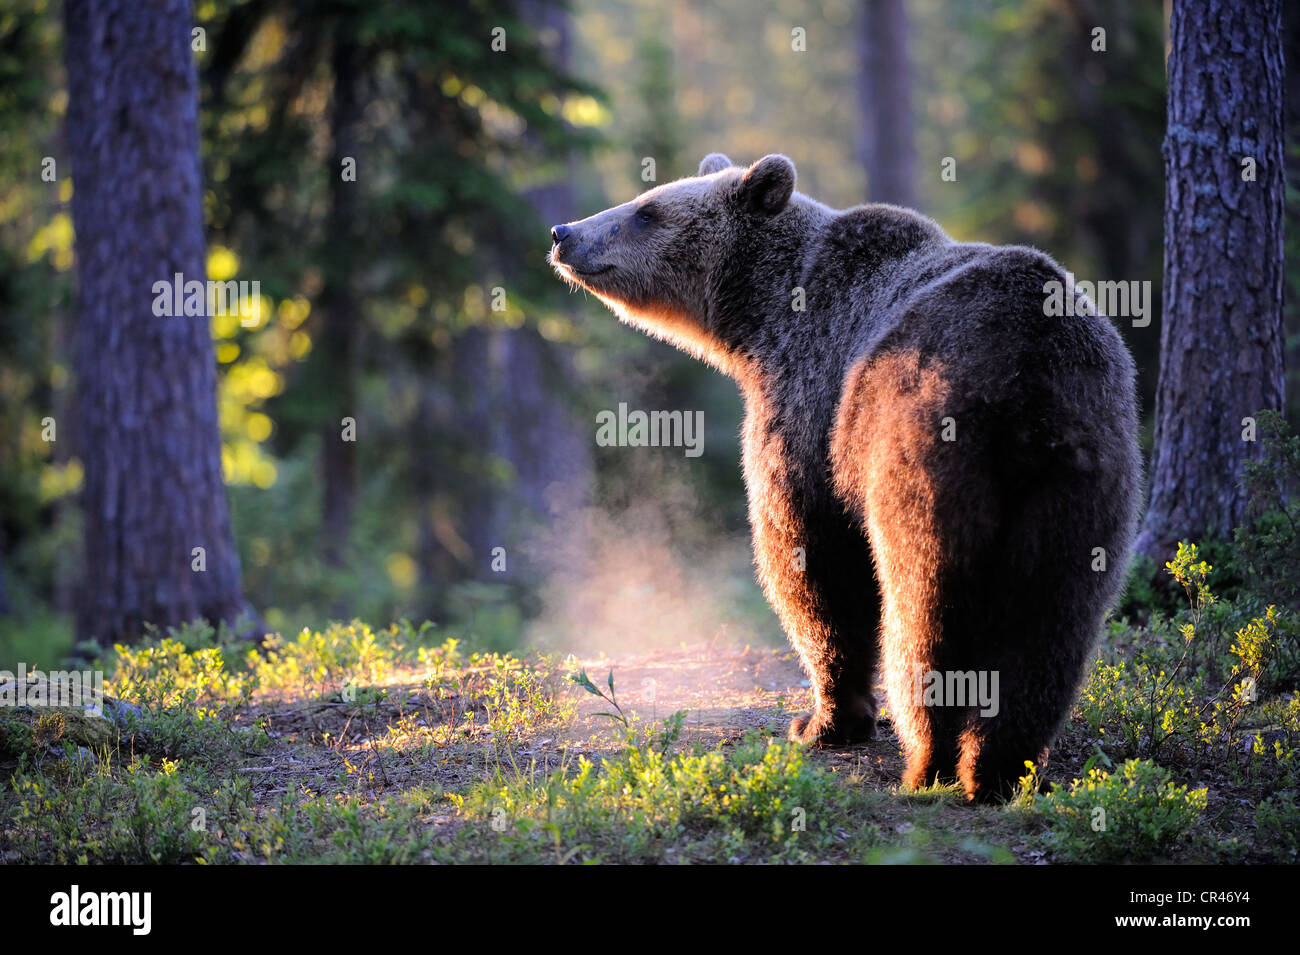 Ours brun (Ursus arctos), femme dans la lumière du matin dans une forêt de conifères, la Carélie, l'Est de la Finlande, Finlande, Europe Banque D'Images